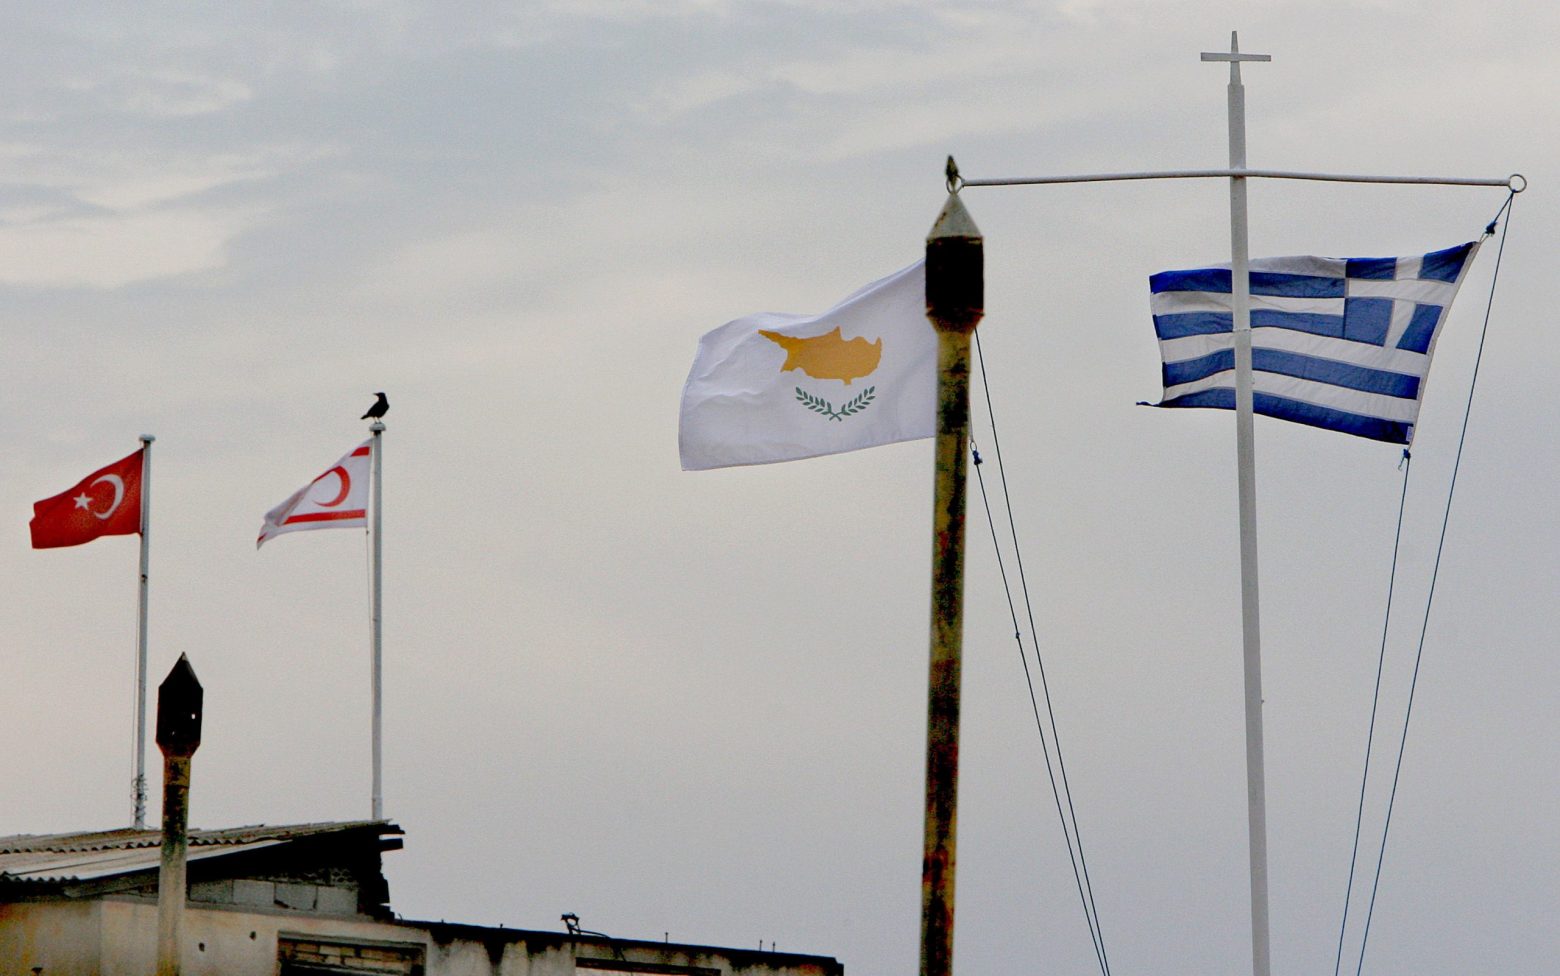 ΟΗΕ: Απογοητευτική η πολιτική διαδικασία στην Κύπρο - Δεν διαφαίνονται προοπτικές